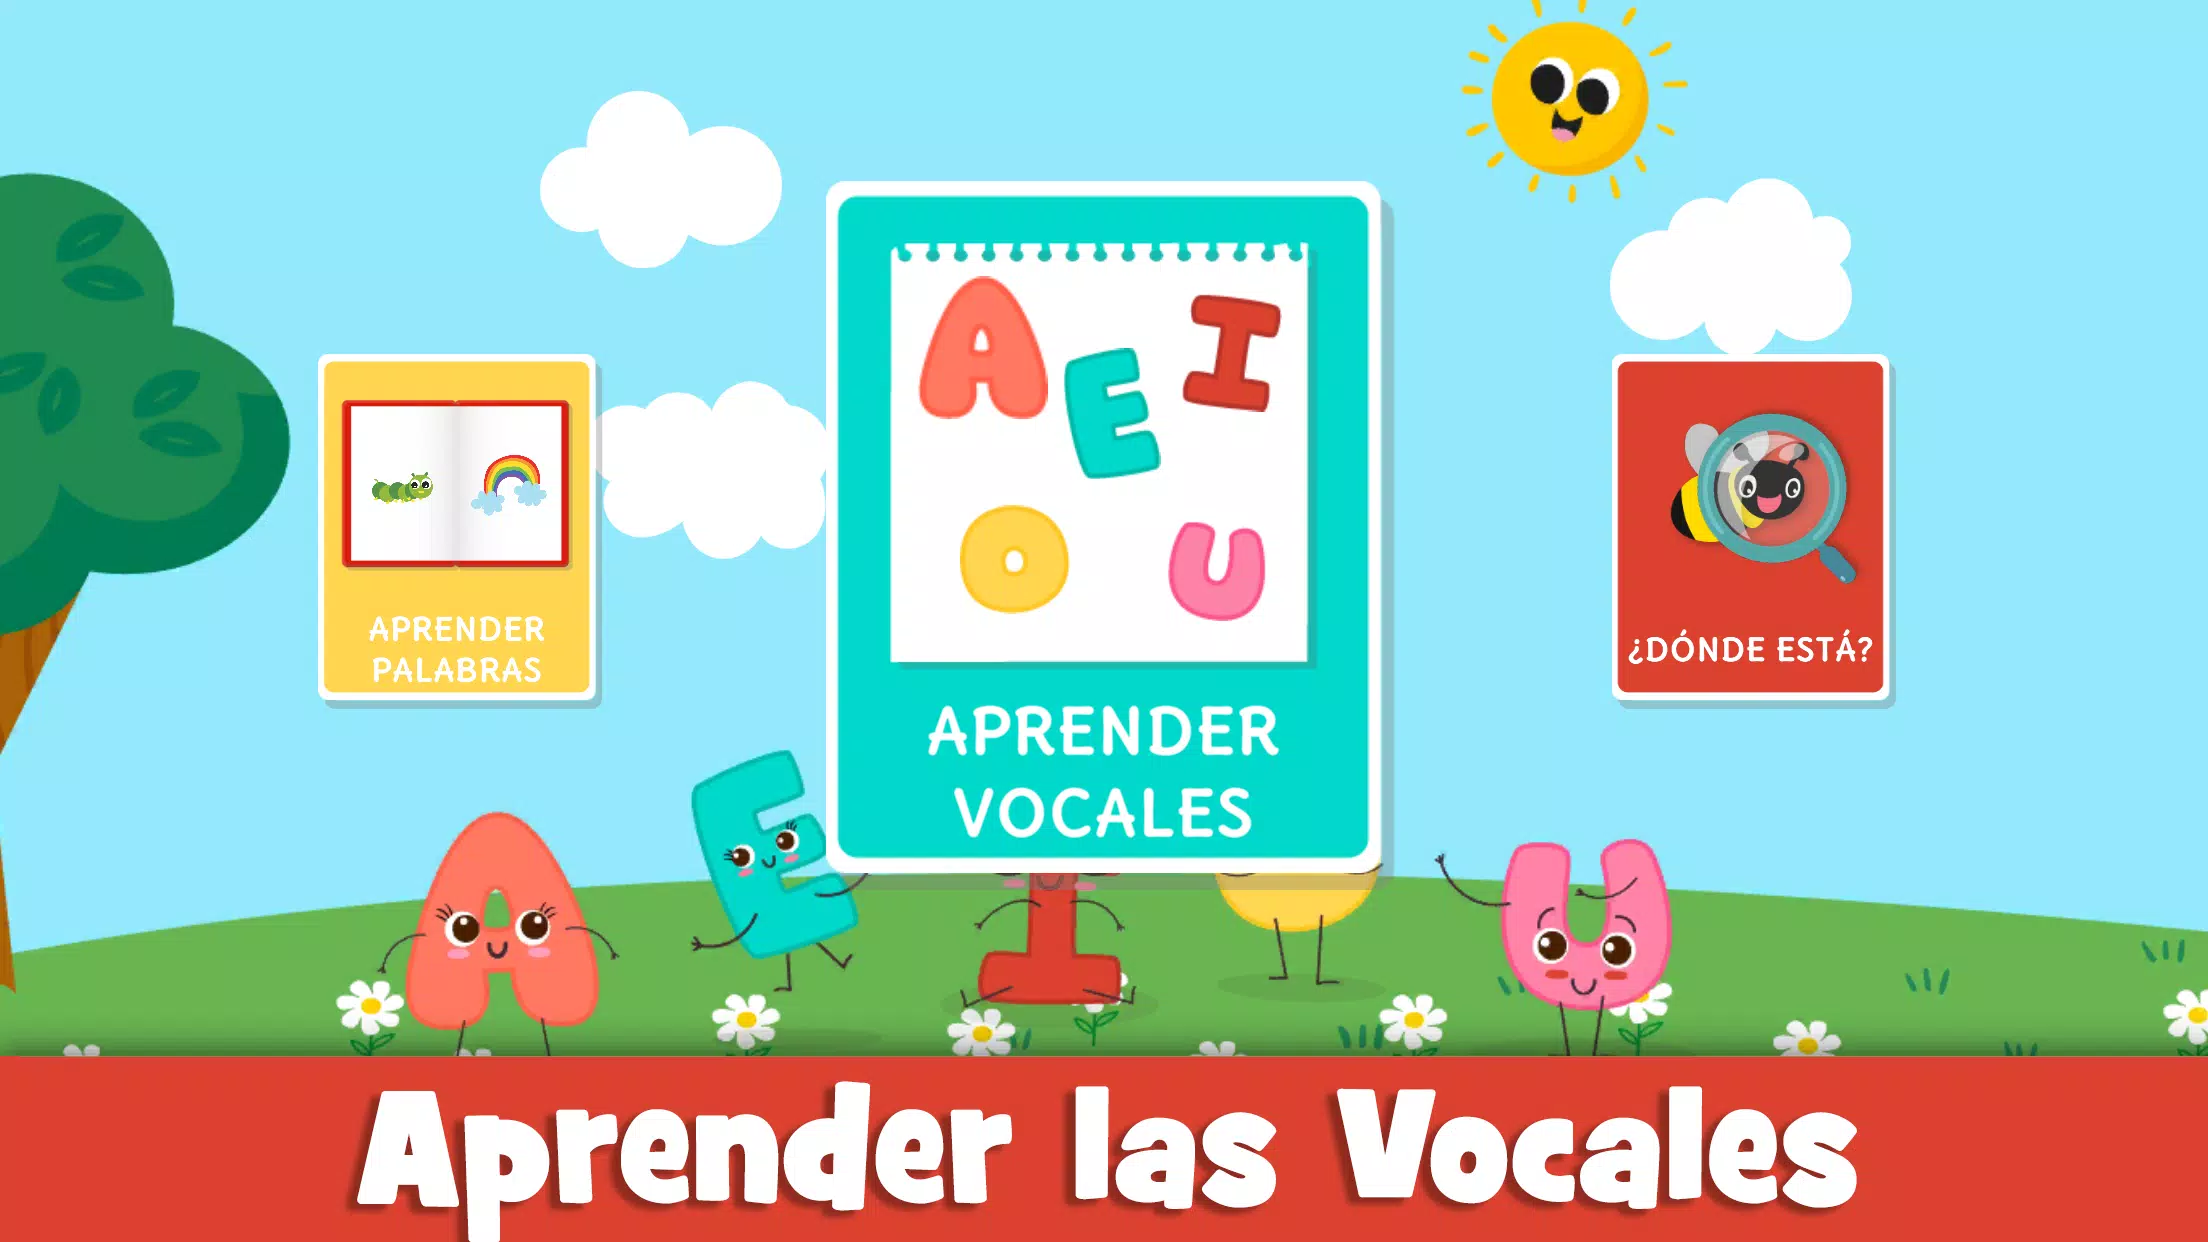 Jogos Educativos Grátis para Crianças com Vogais